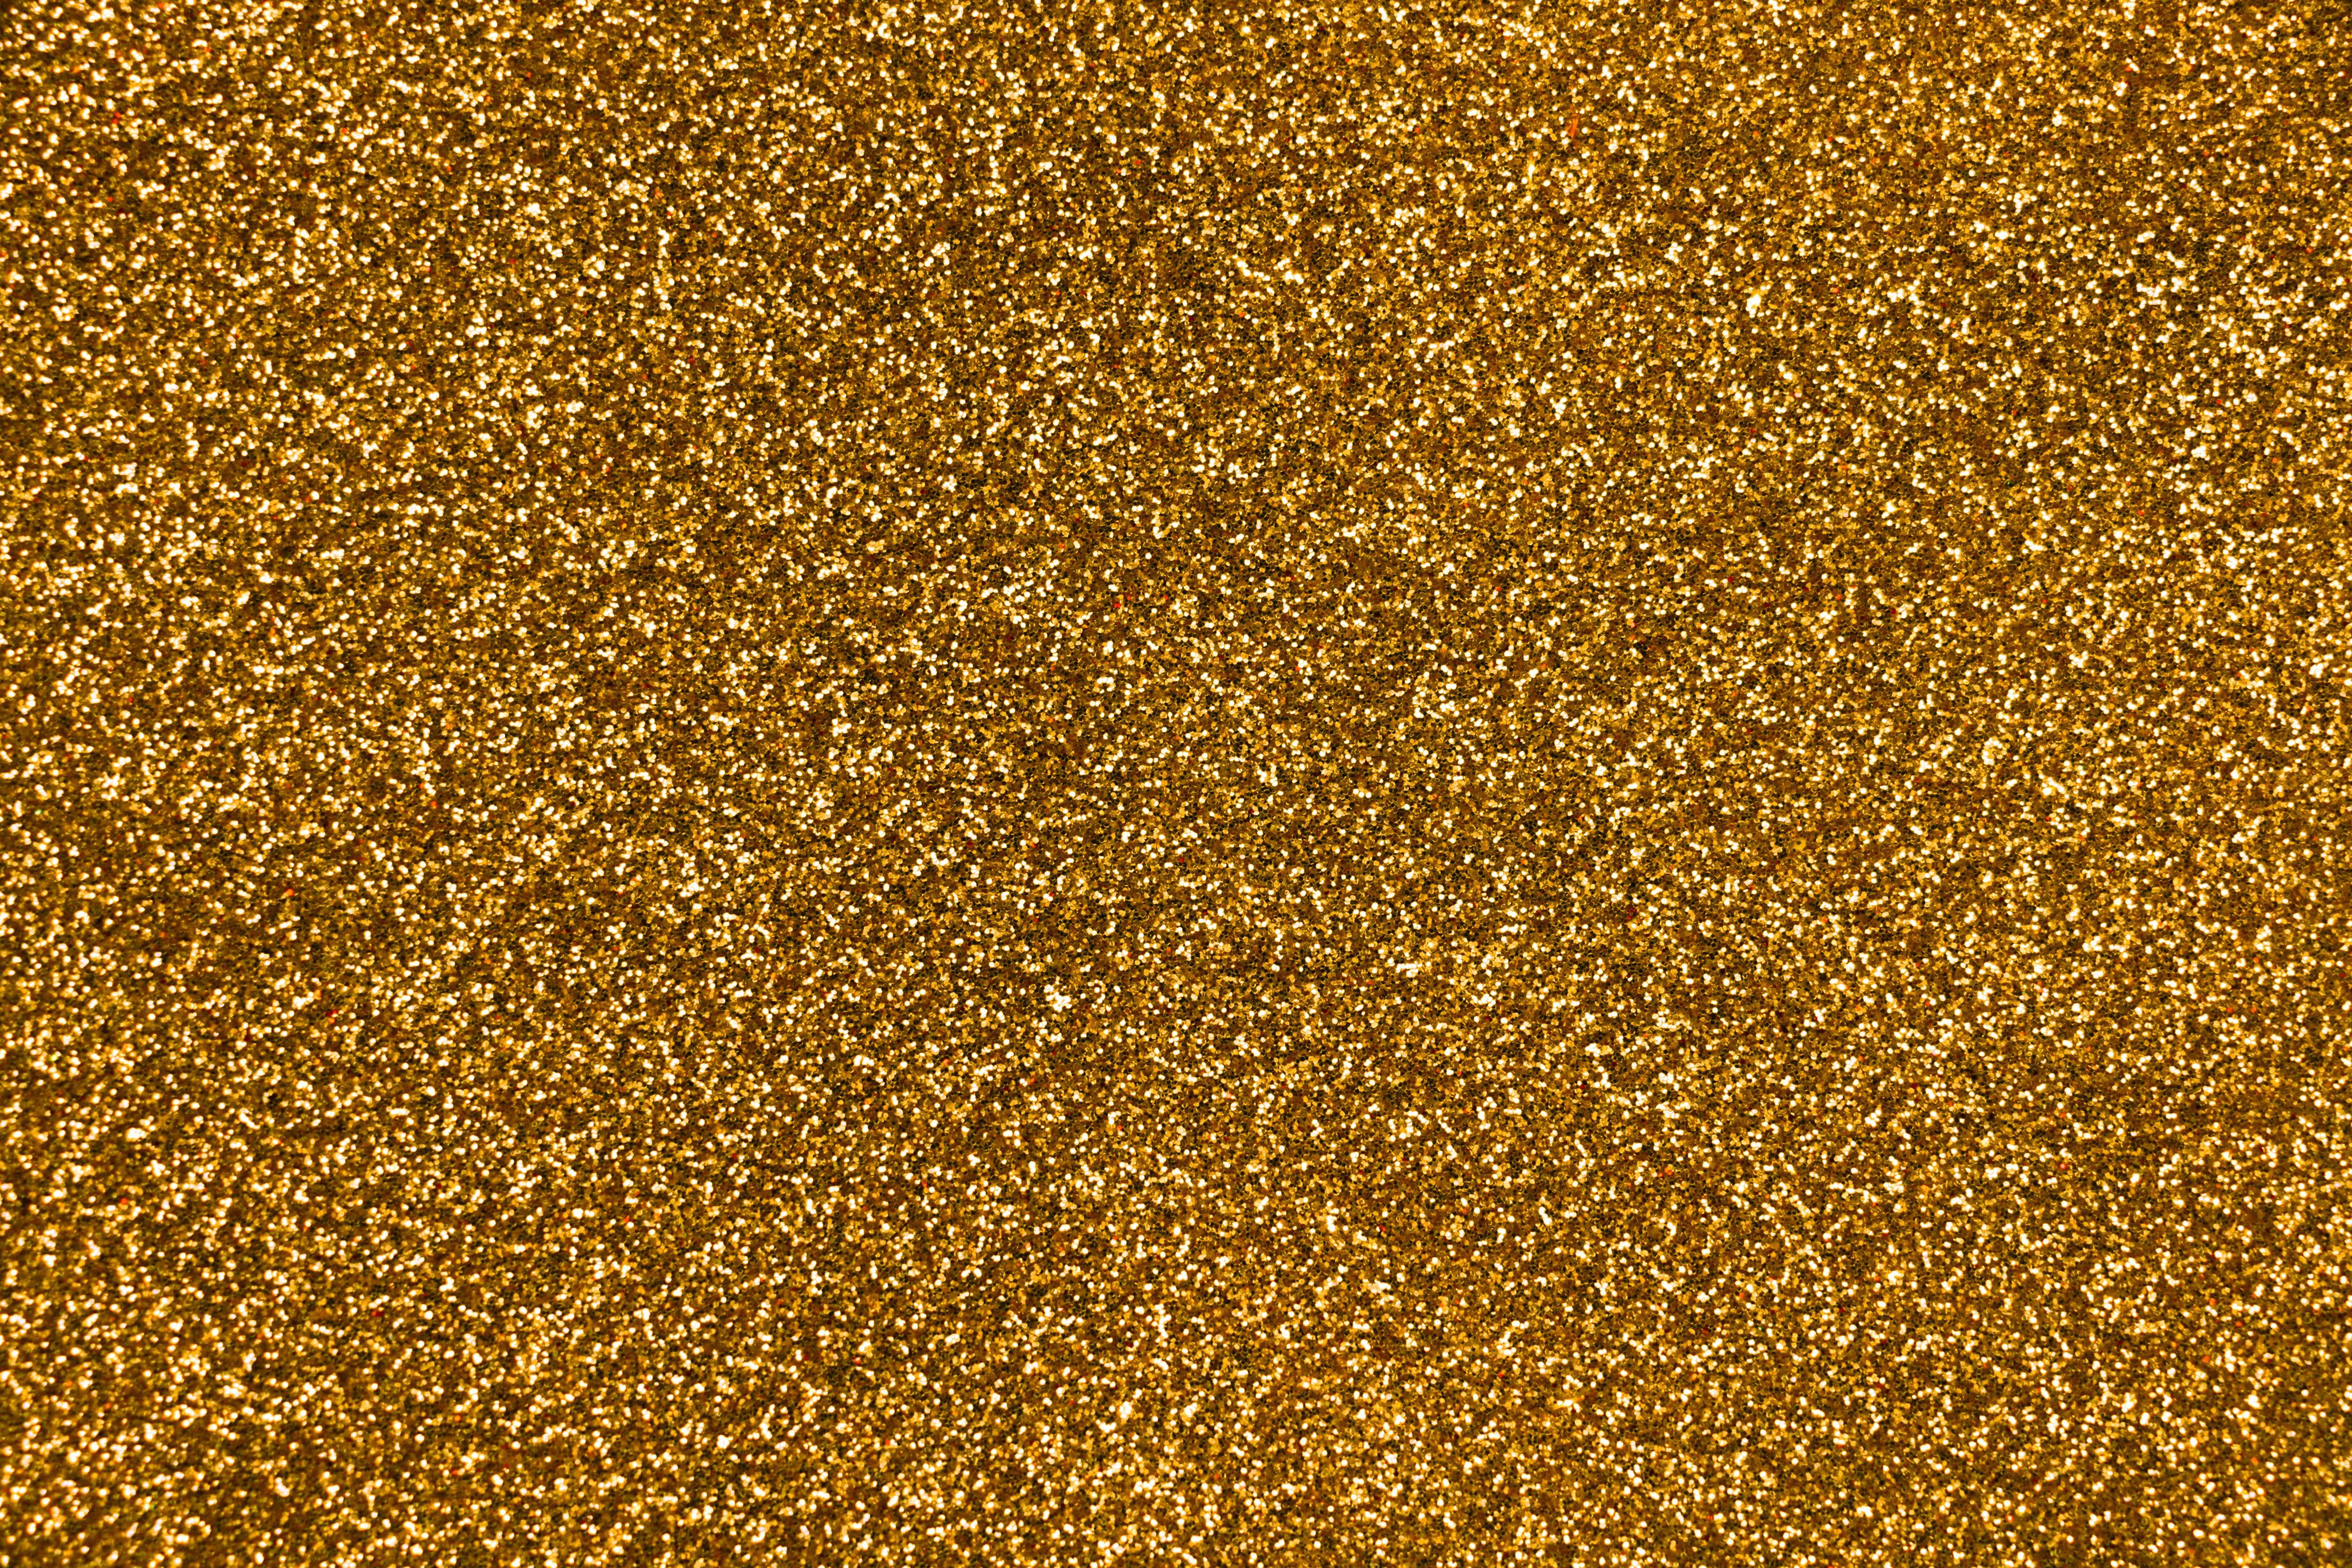 32k Wallpaper Gold texture, surface, textures